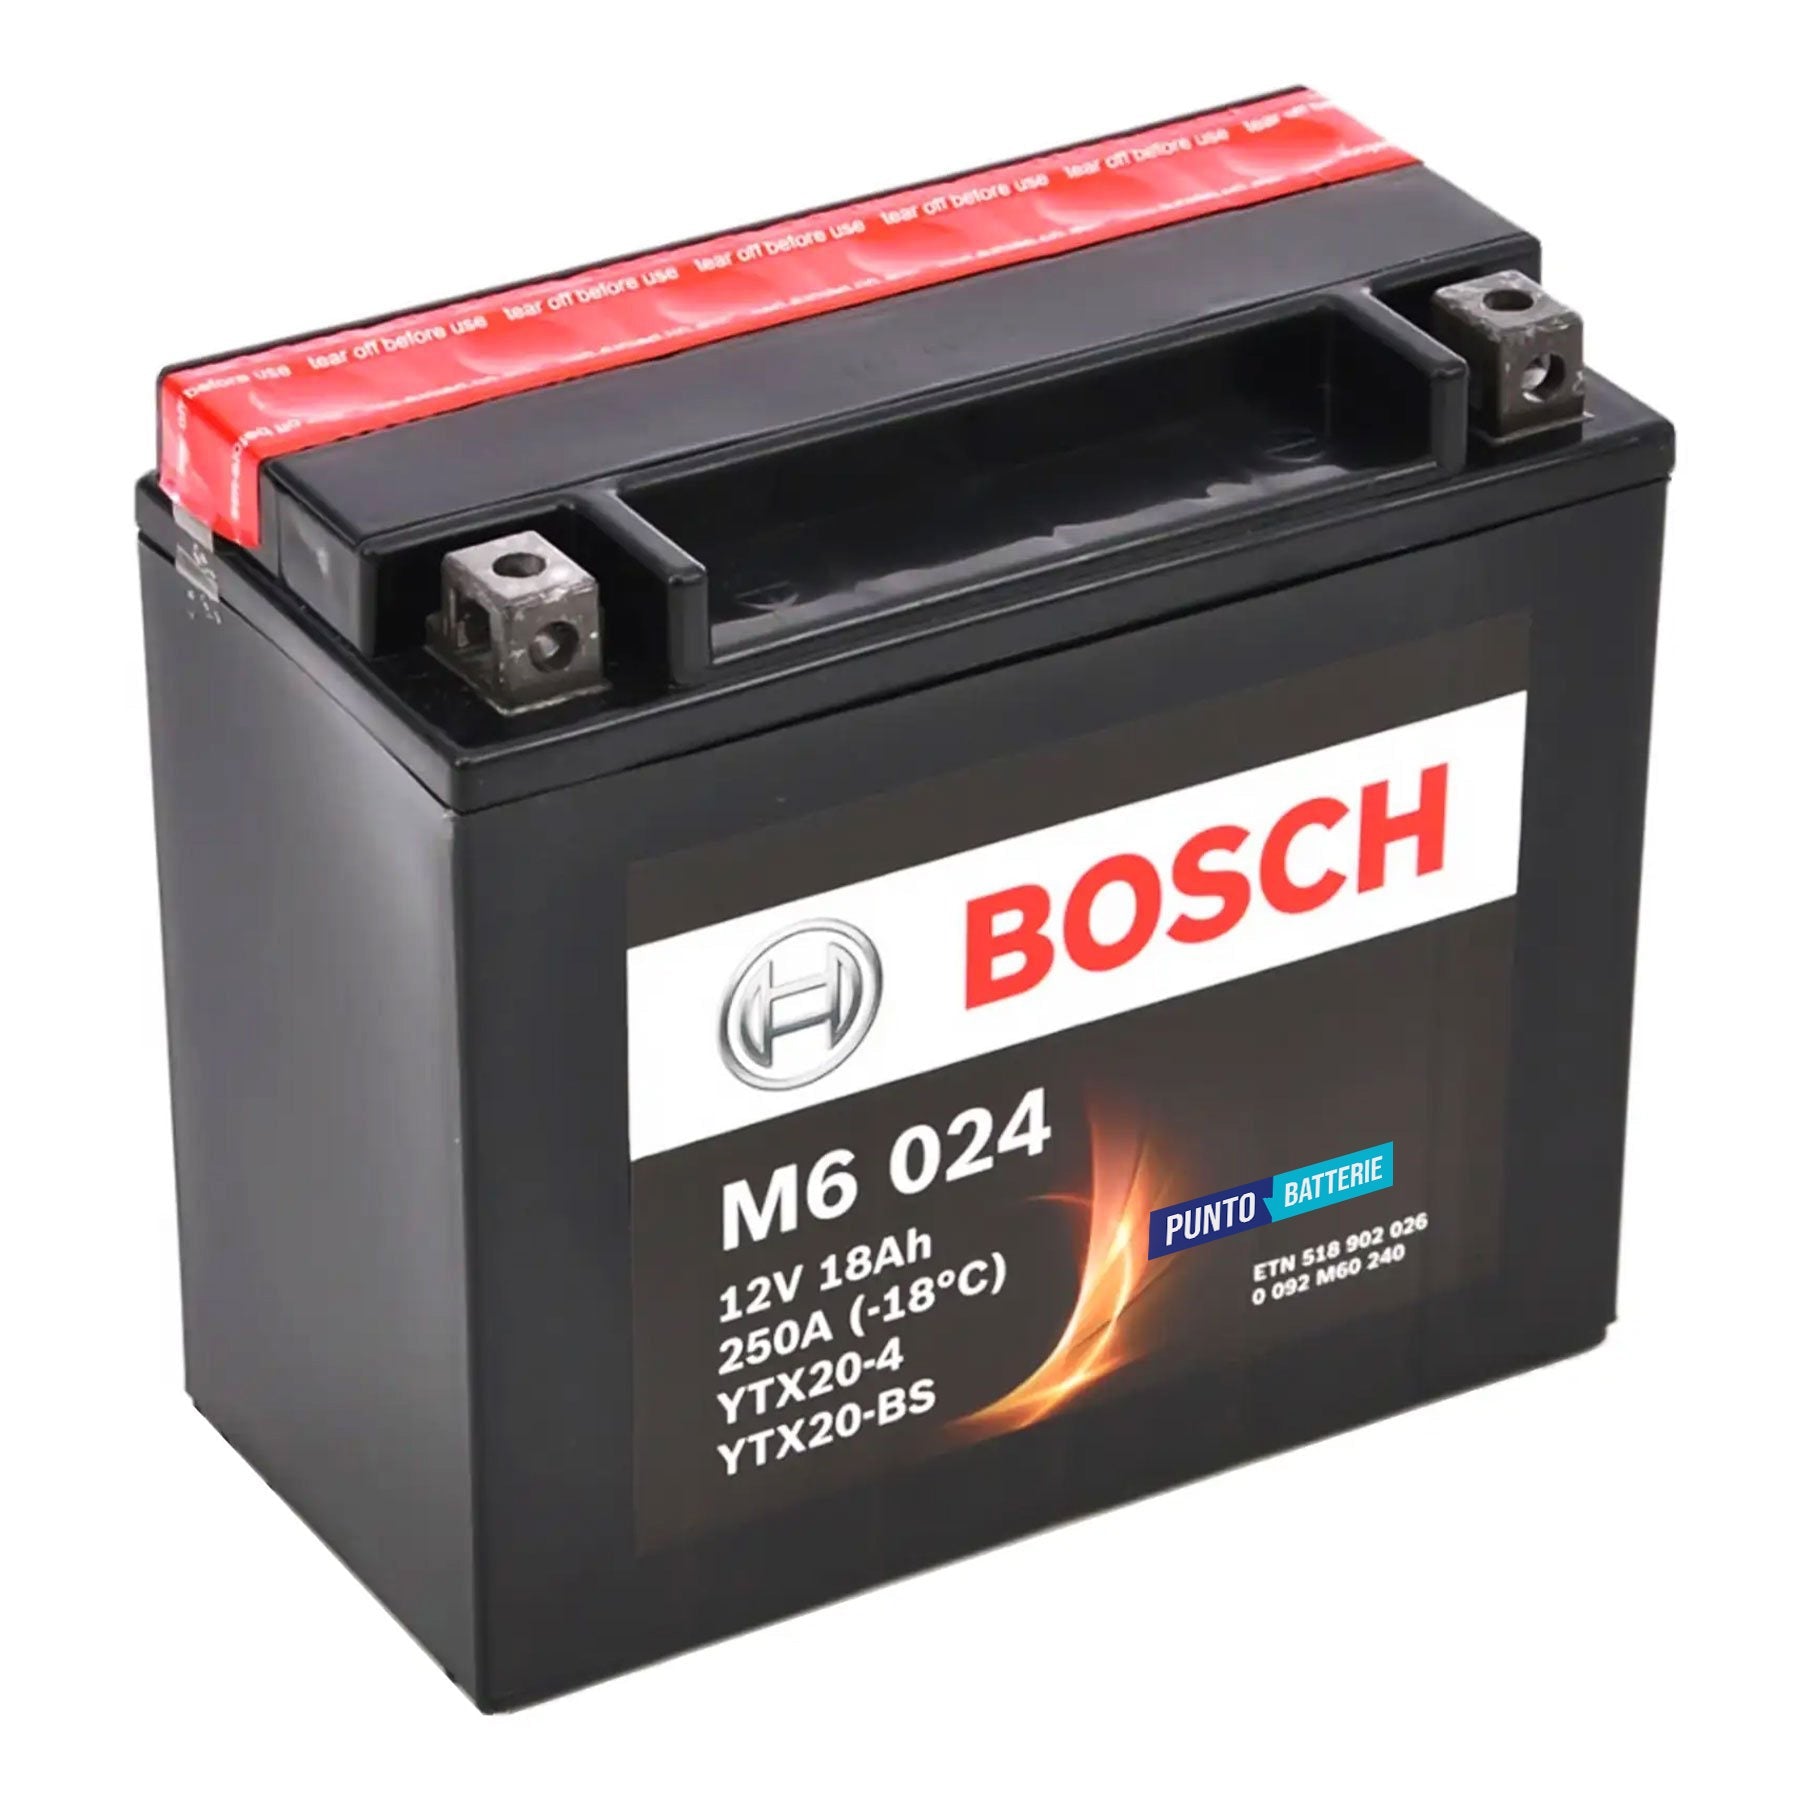 Batteria originale Bosch M6 M6024, dimensioni 175 x 87 x 155, polo positivo a sinistra, 12 volt, 18 amperora, 250 ampere. Batteria per moto, scooter e powersport.